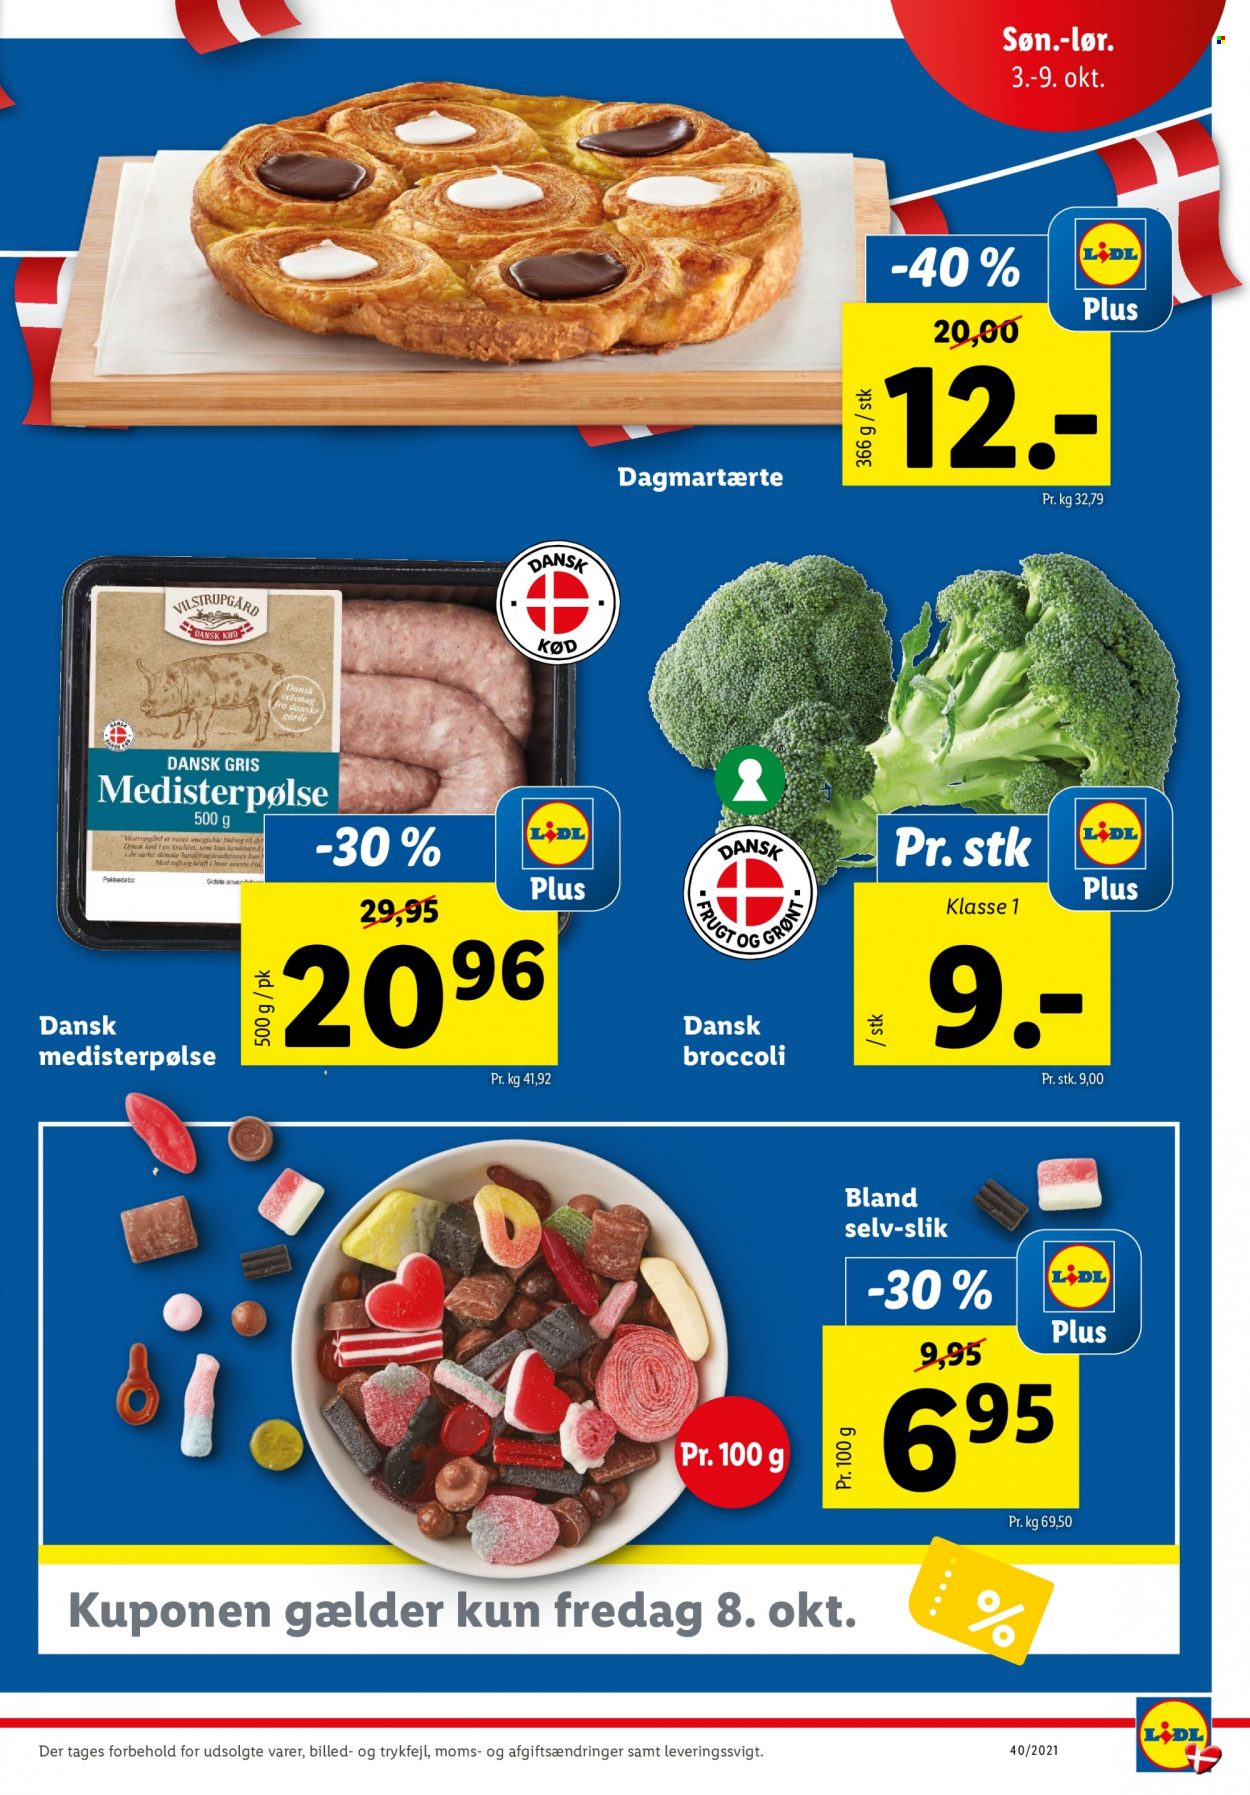 thumbnail - Lidl tilbud  - 3.10.2021 - 9.10.2021 - tilbudsprodukter - broccoli, dansk gris, dagmartærte, saft. Side 3.